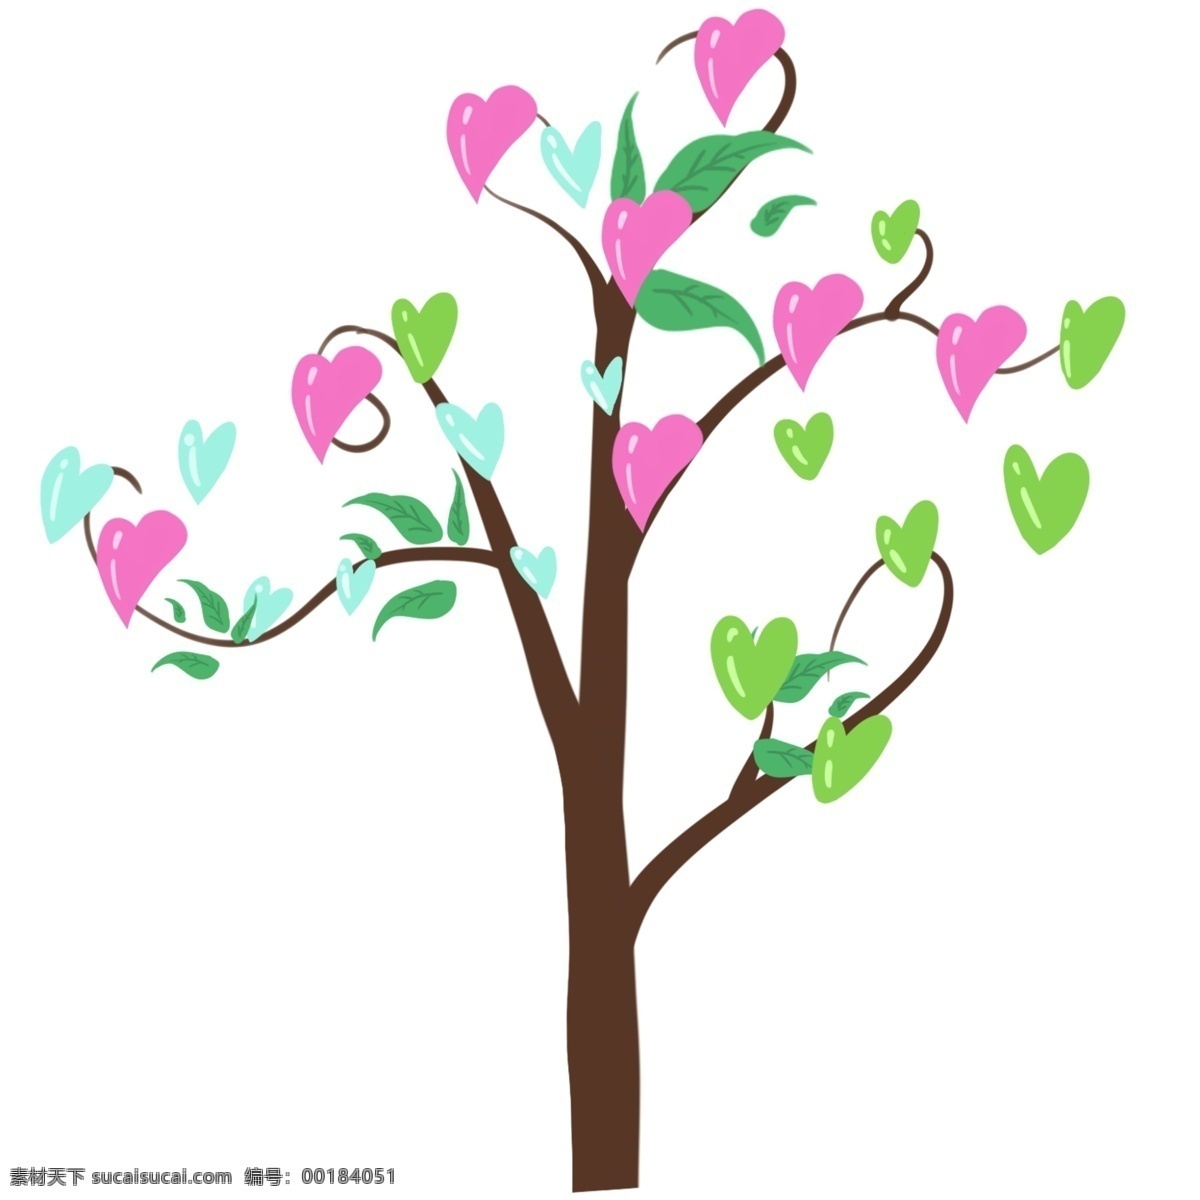 粉色 心形 小树 插画 粉色的小树 卡通插画 心形插画 心形产品 心形物品 心形小物 粉色的心形